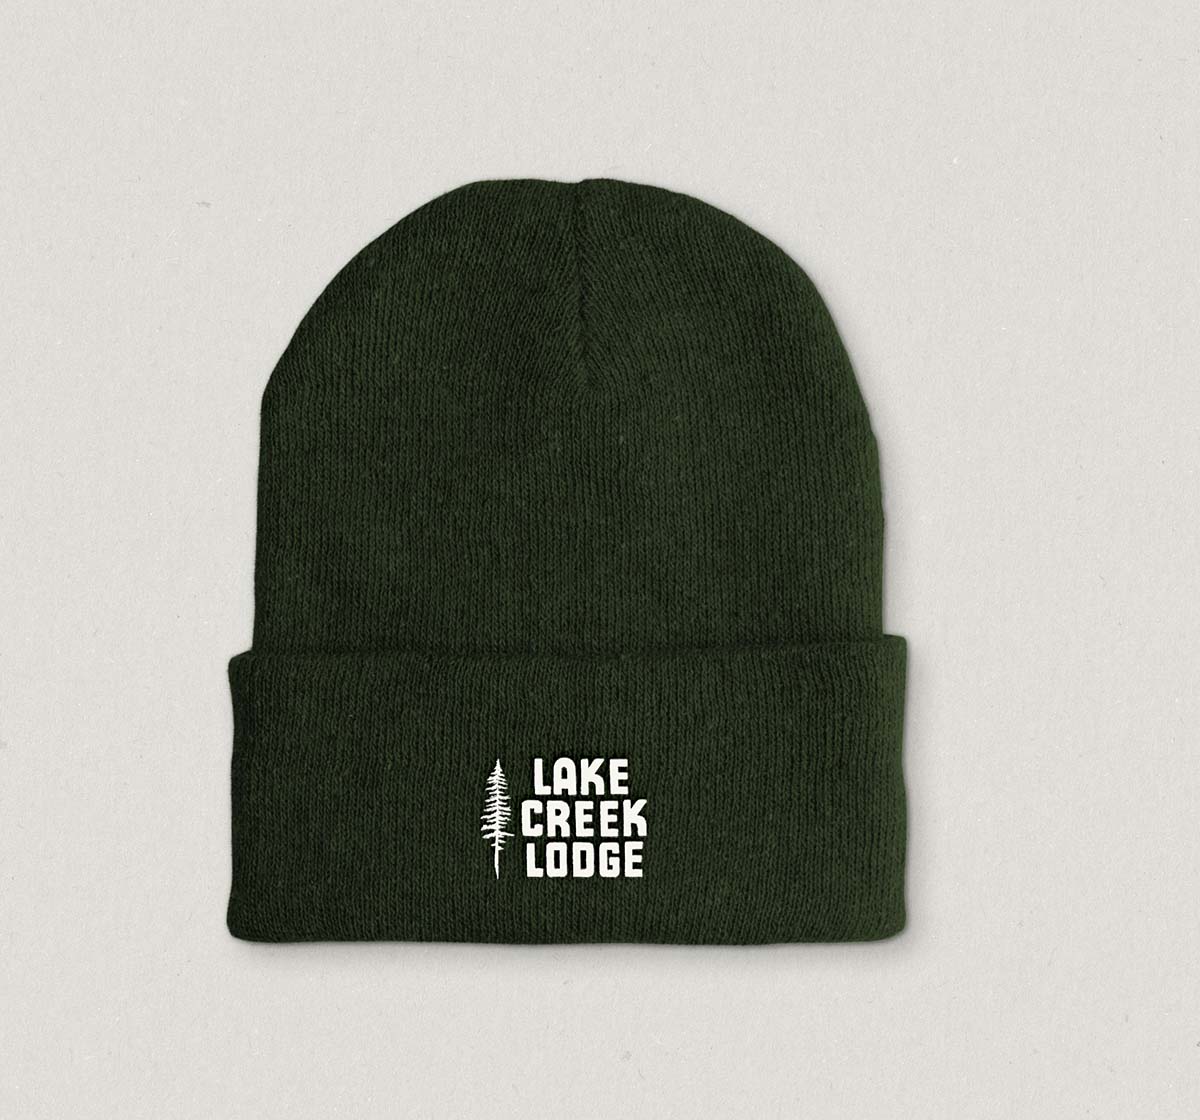 branded hat design for Lake Creek Lodge